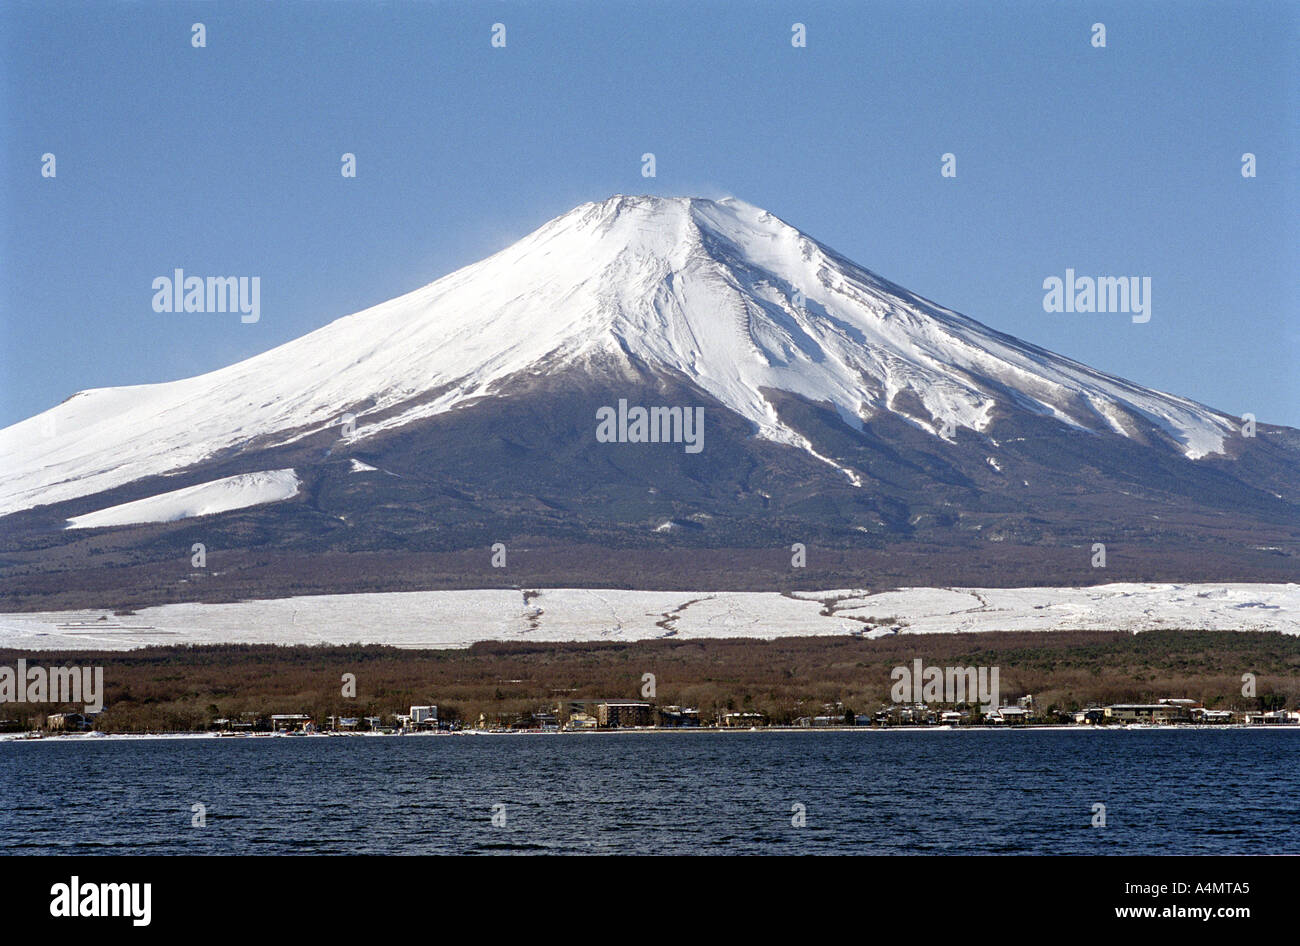 La cima nevada del Monte Fuji en Japón vistos en invierno contra un cielo azul brillante. Foto de stock